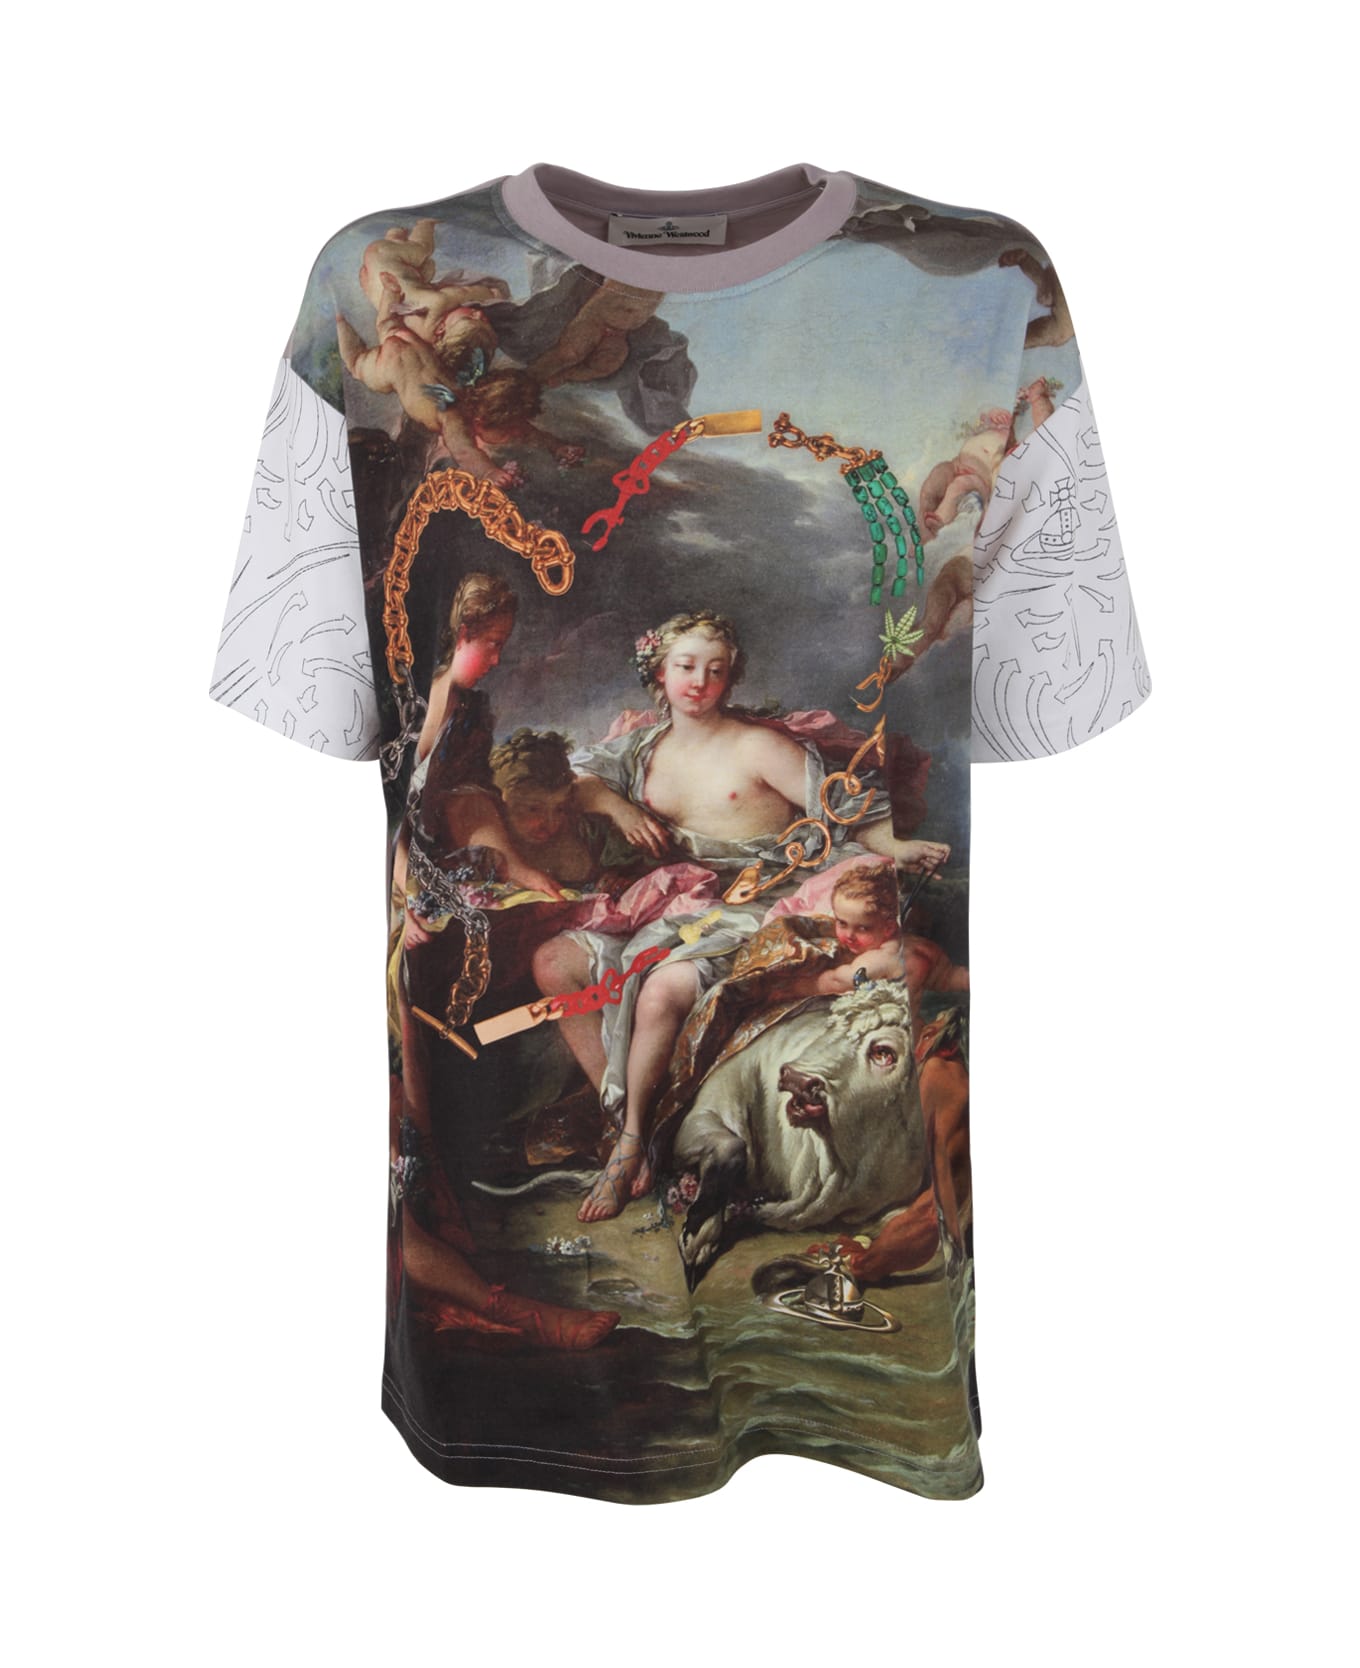 Vivienne Westwood Classic T-shirt - Boucher Tシャツ